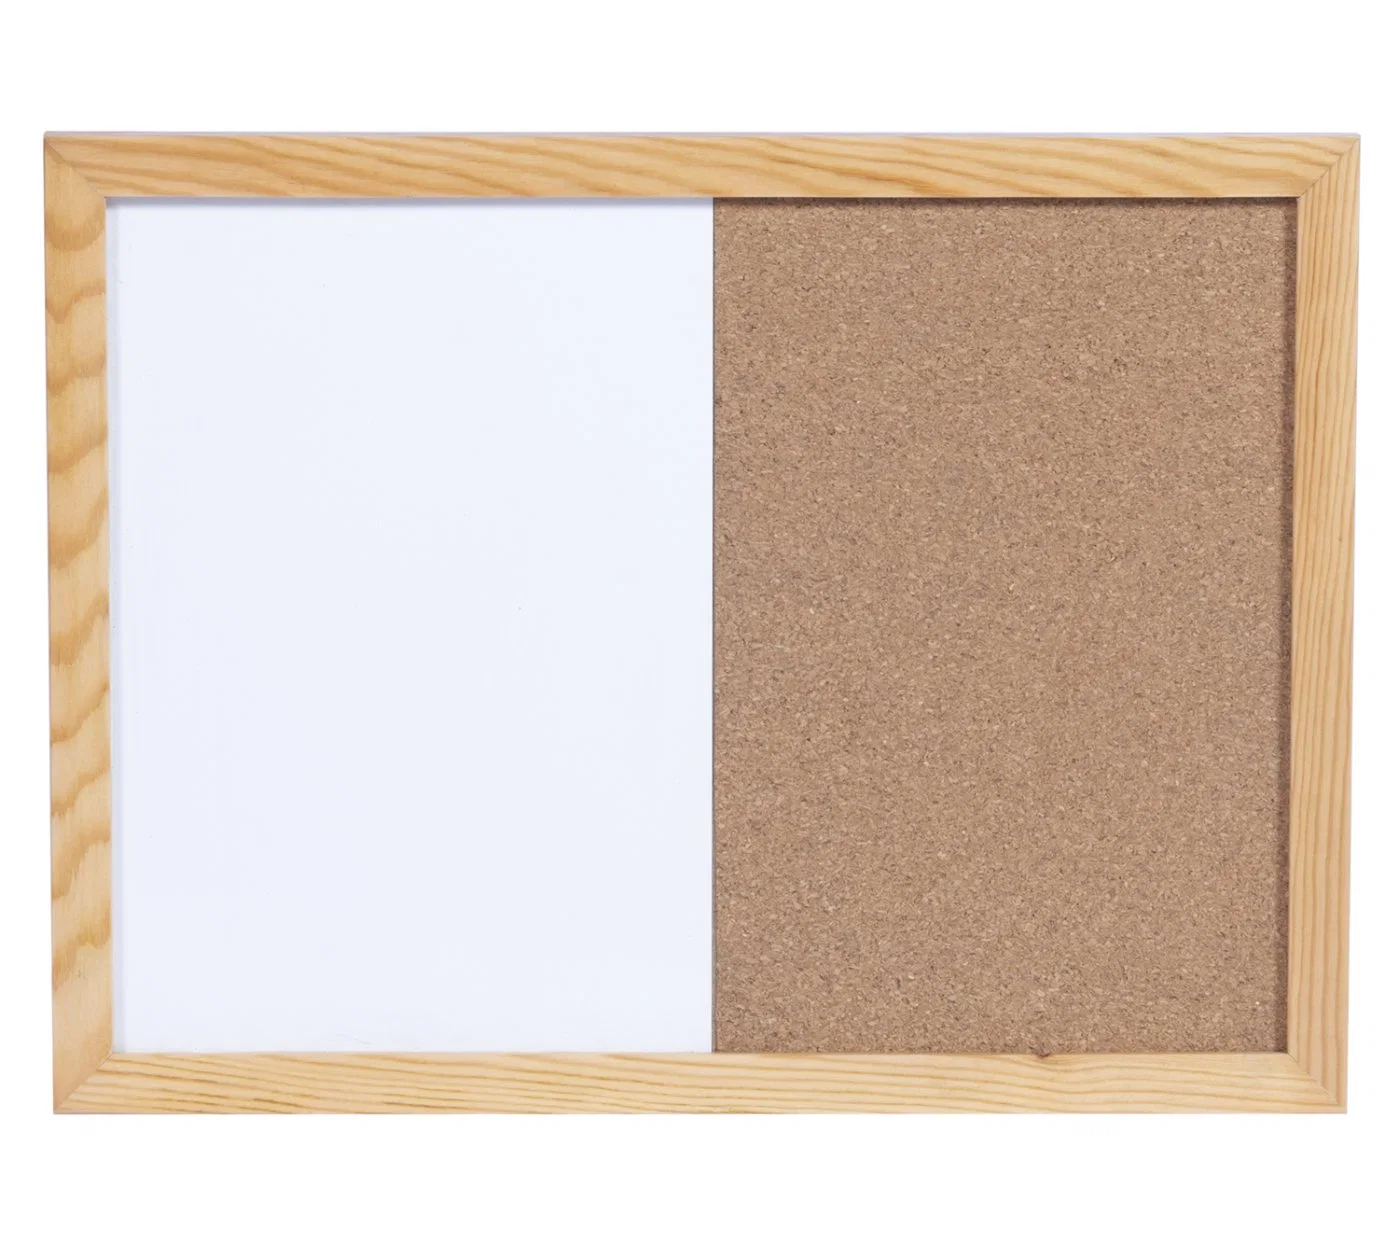 Combined Board in Whiteboard & Corkboard for Writing & Memo Board